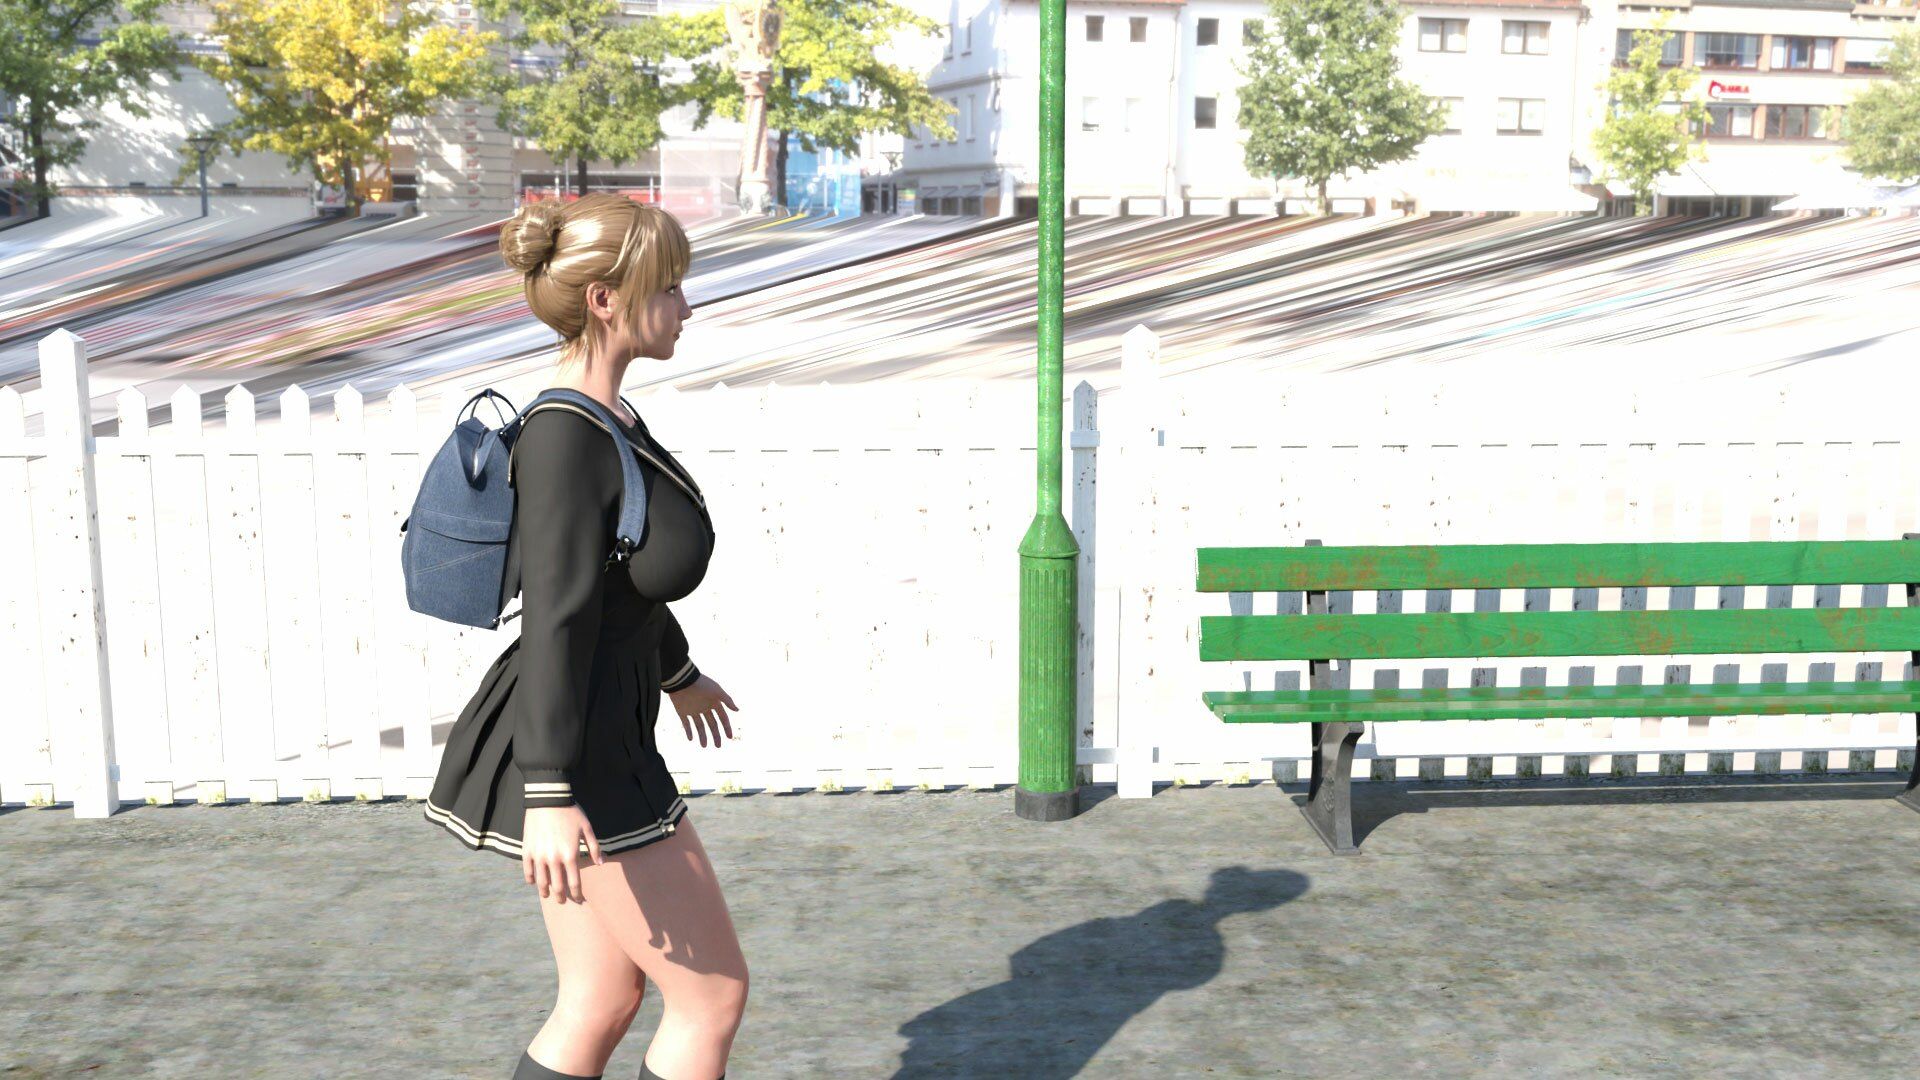 早朝の駅で常軌を逸したスカートの短さの女子学生を見つけた。学校へ向かってホームを歩いているところをドローンを使って追いかけてスカート内を盗撮（009:ノーパン・パ…6